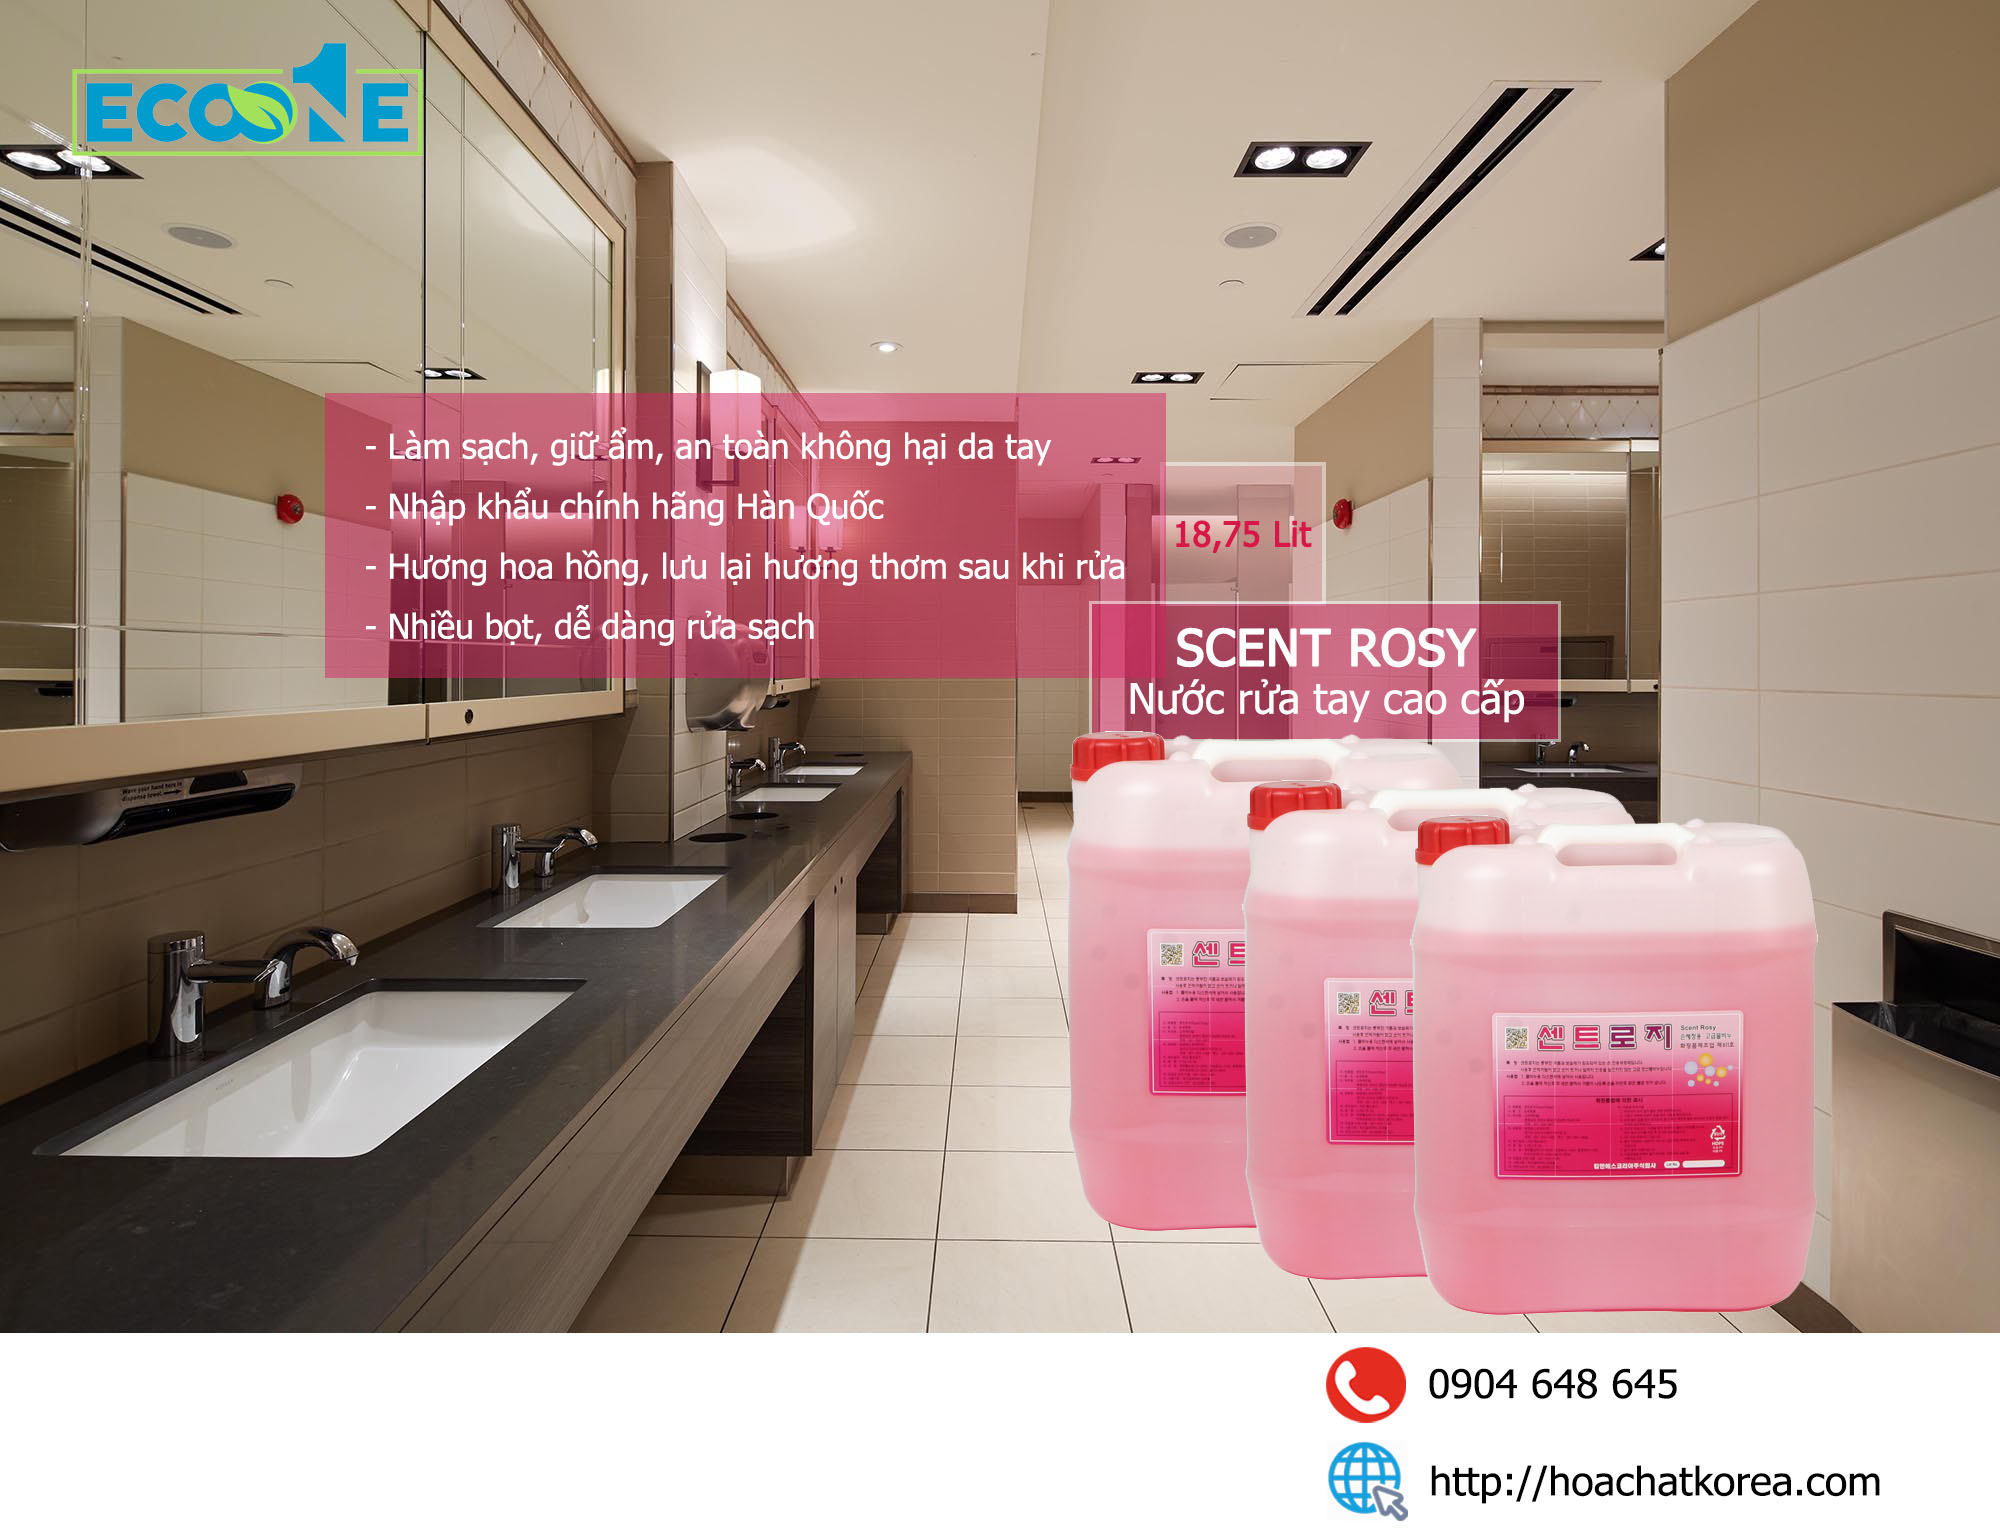 Nước rửa tay cao cấp Scent Rosy